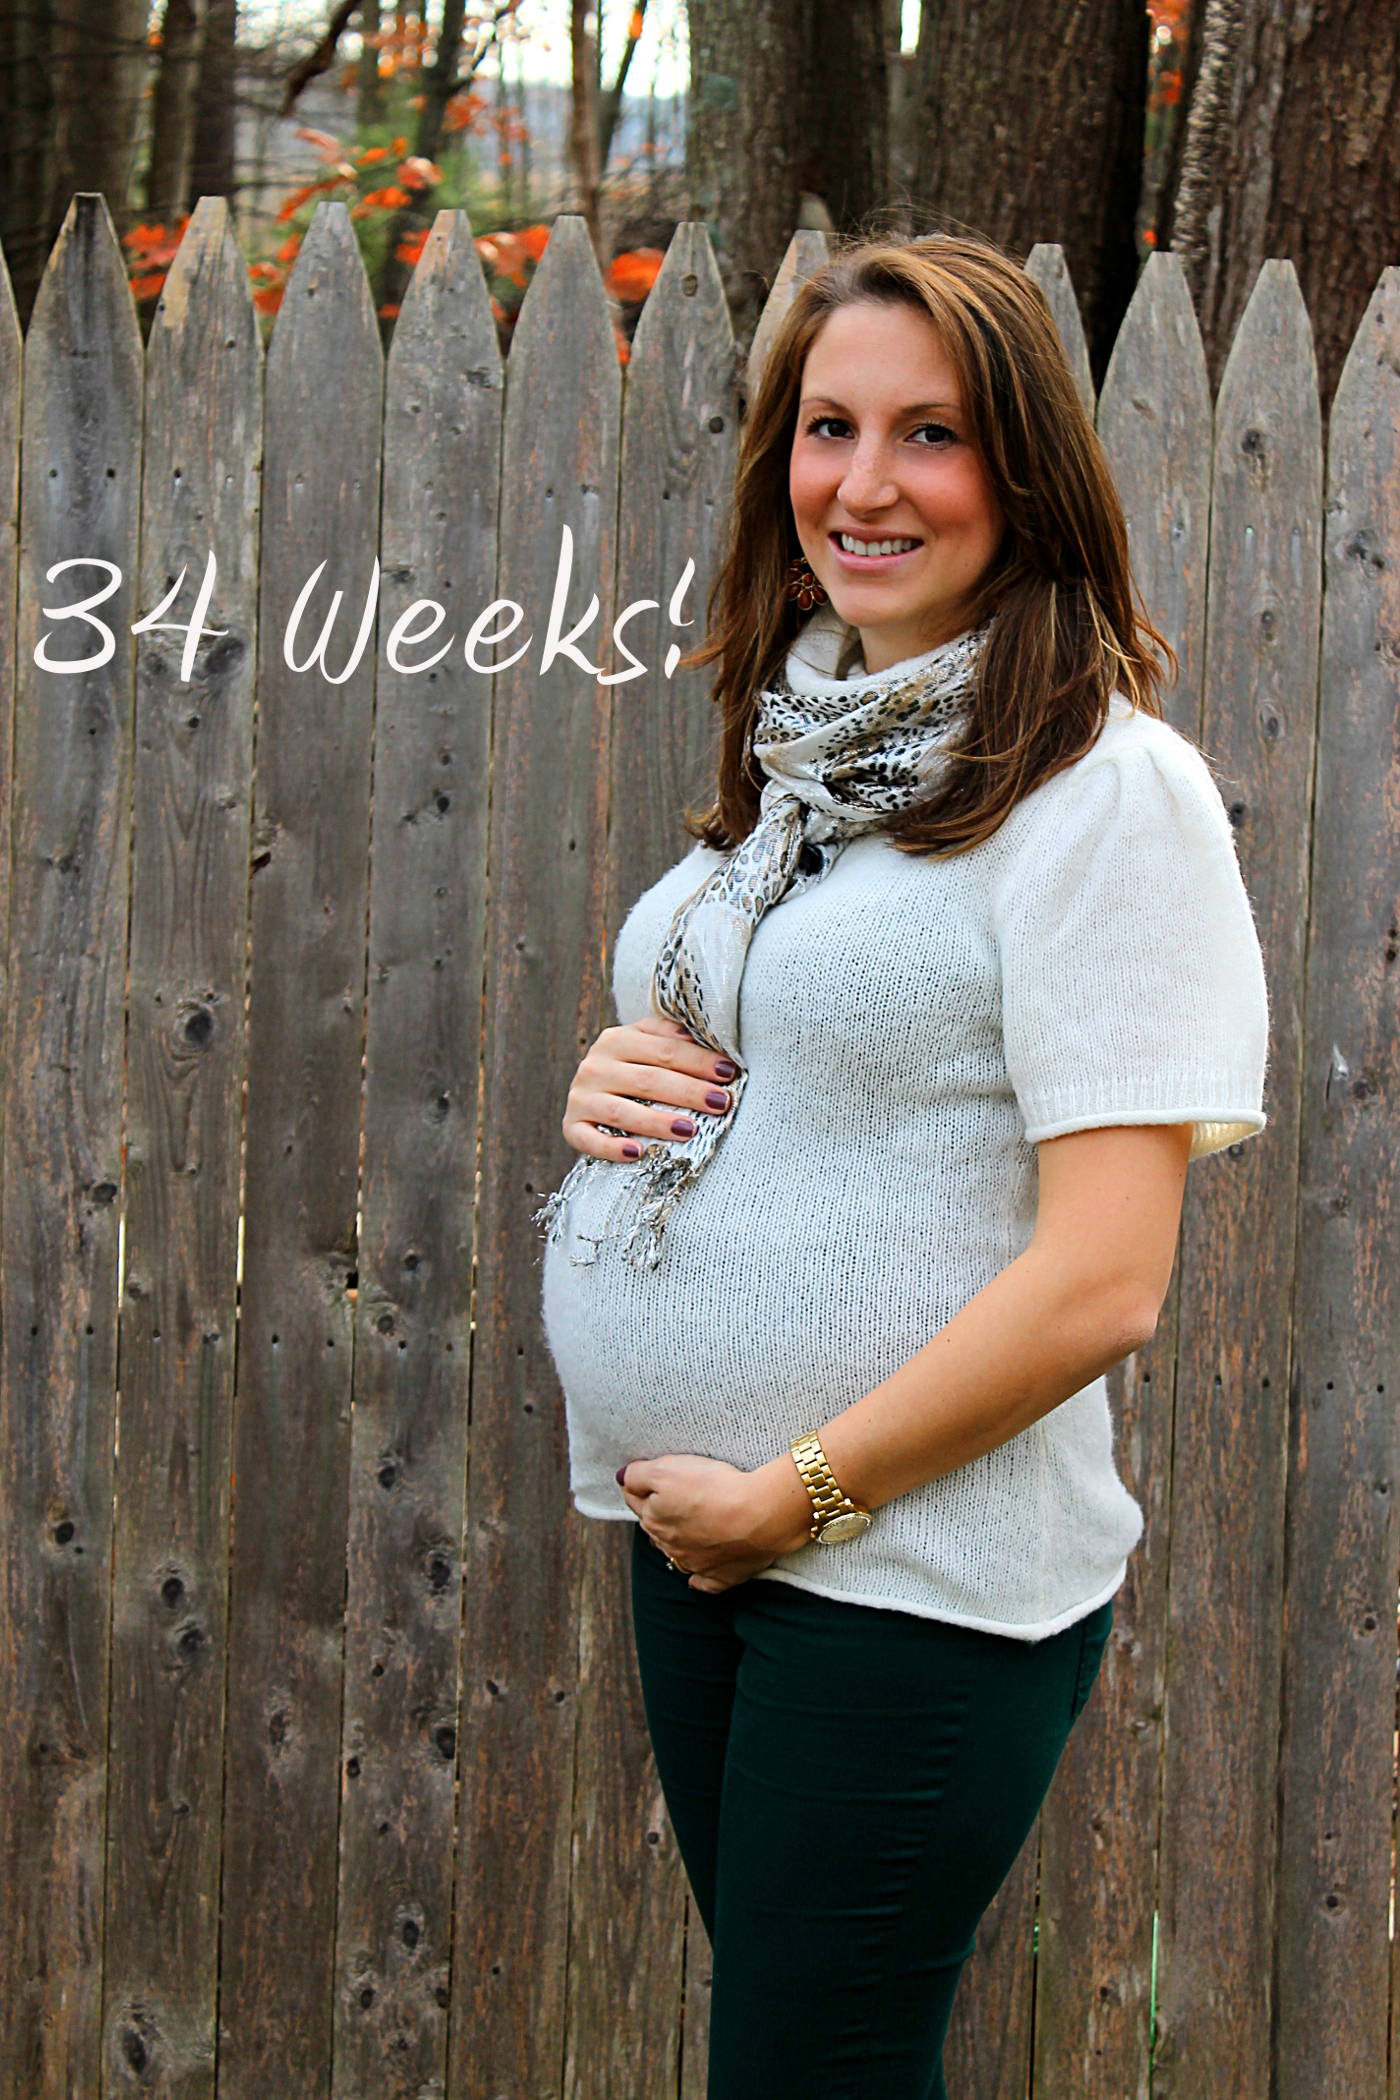 34 weeks